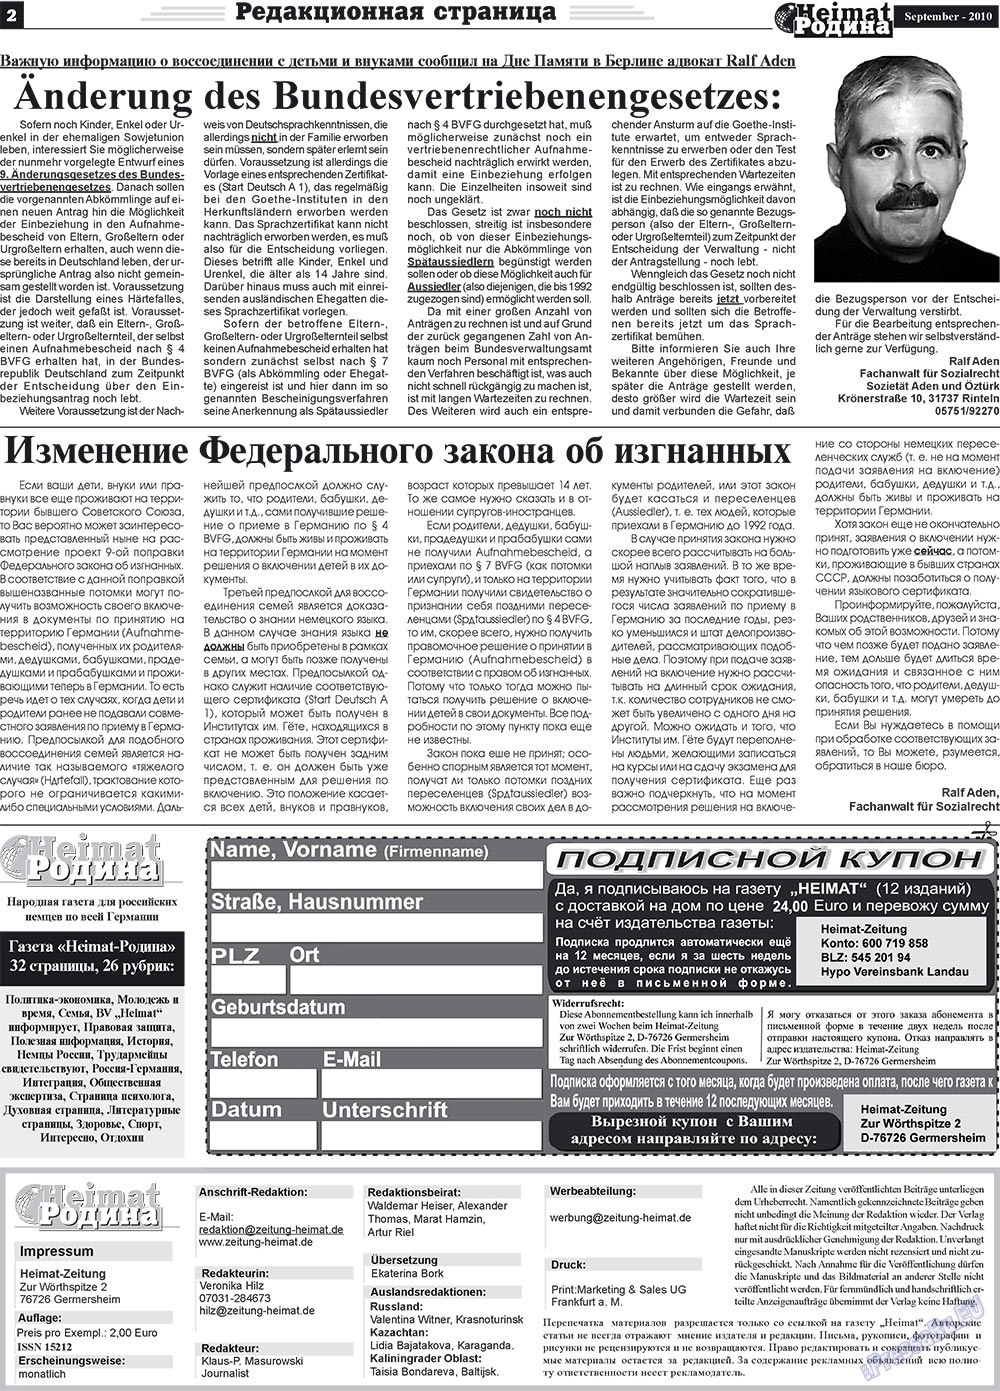 Heimat-Родина (газета). 2010 год, номер 9, стр. 2